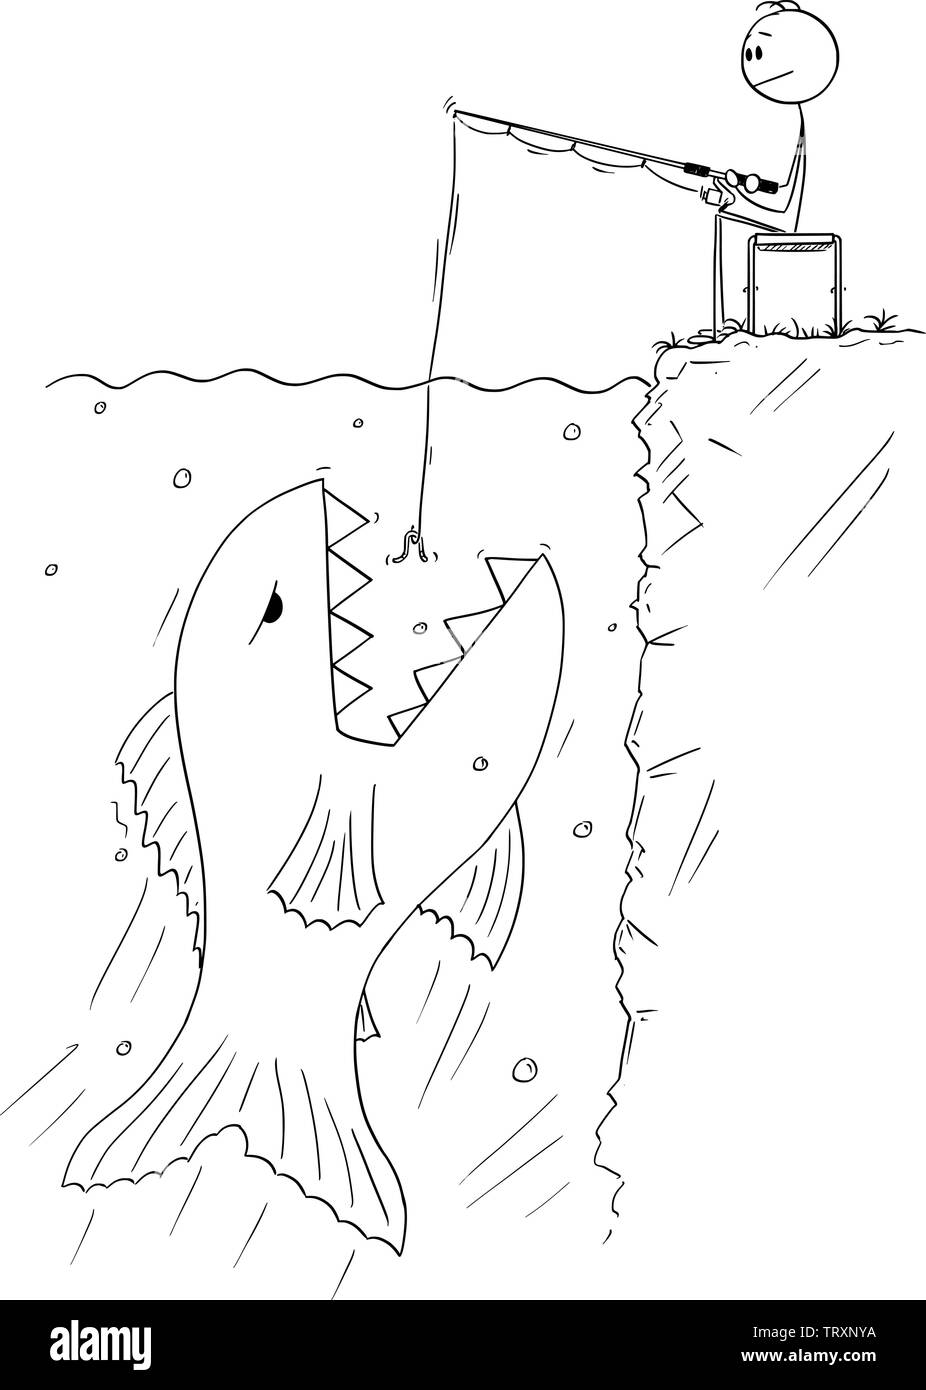 Cartoon vectores stick figura dibujo Ilustración conceptual del hombre sentado tranquilamente cerca del agua, y la pesca deportiva o de pesca mientras gigante y peligroso es flotante de pescado para comer el cebo. Ilustración del Vector